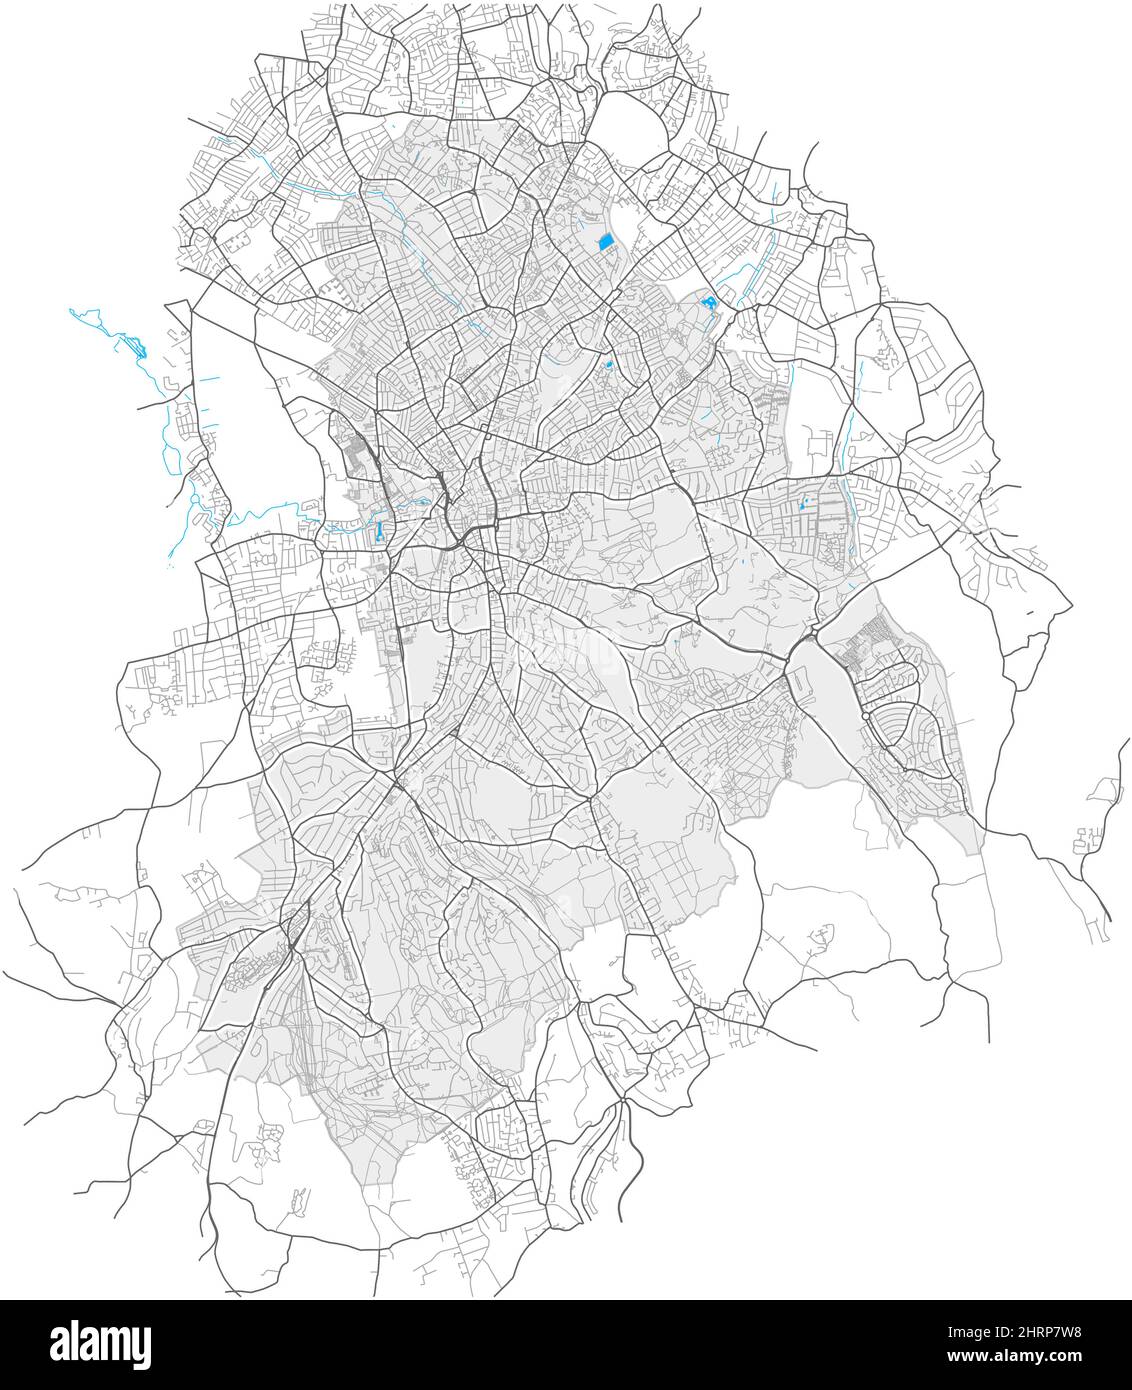 Croydon, Greater London, Großbritannien, Vektorkarte mit hoher Detailtiefe und Stadtgrenzen sowie bearbeitbaren Pfaden. Weiße Umrisse für Hauptstraßen. Viele kleinere p Stock Vektor